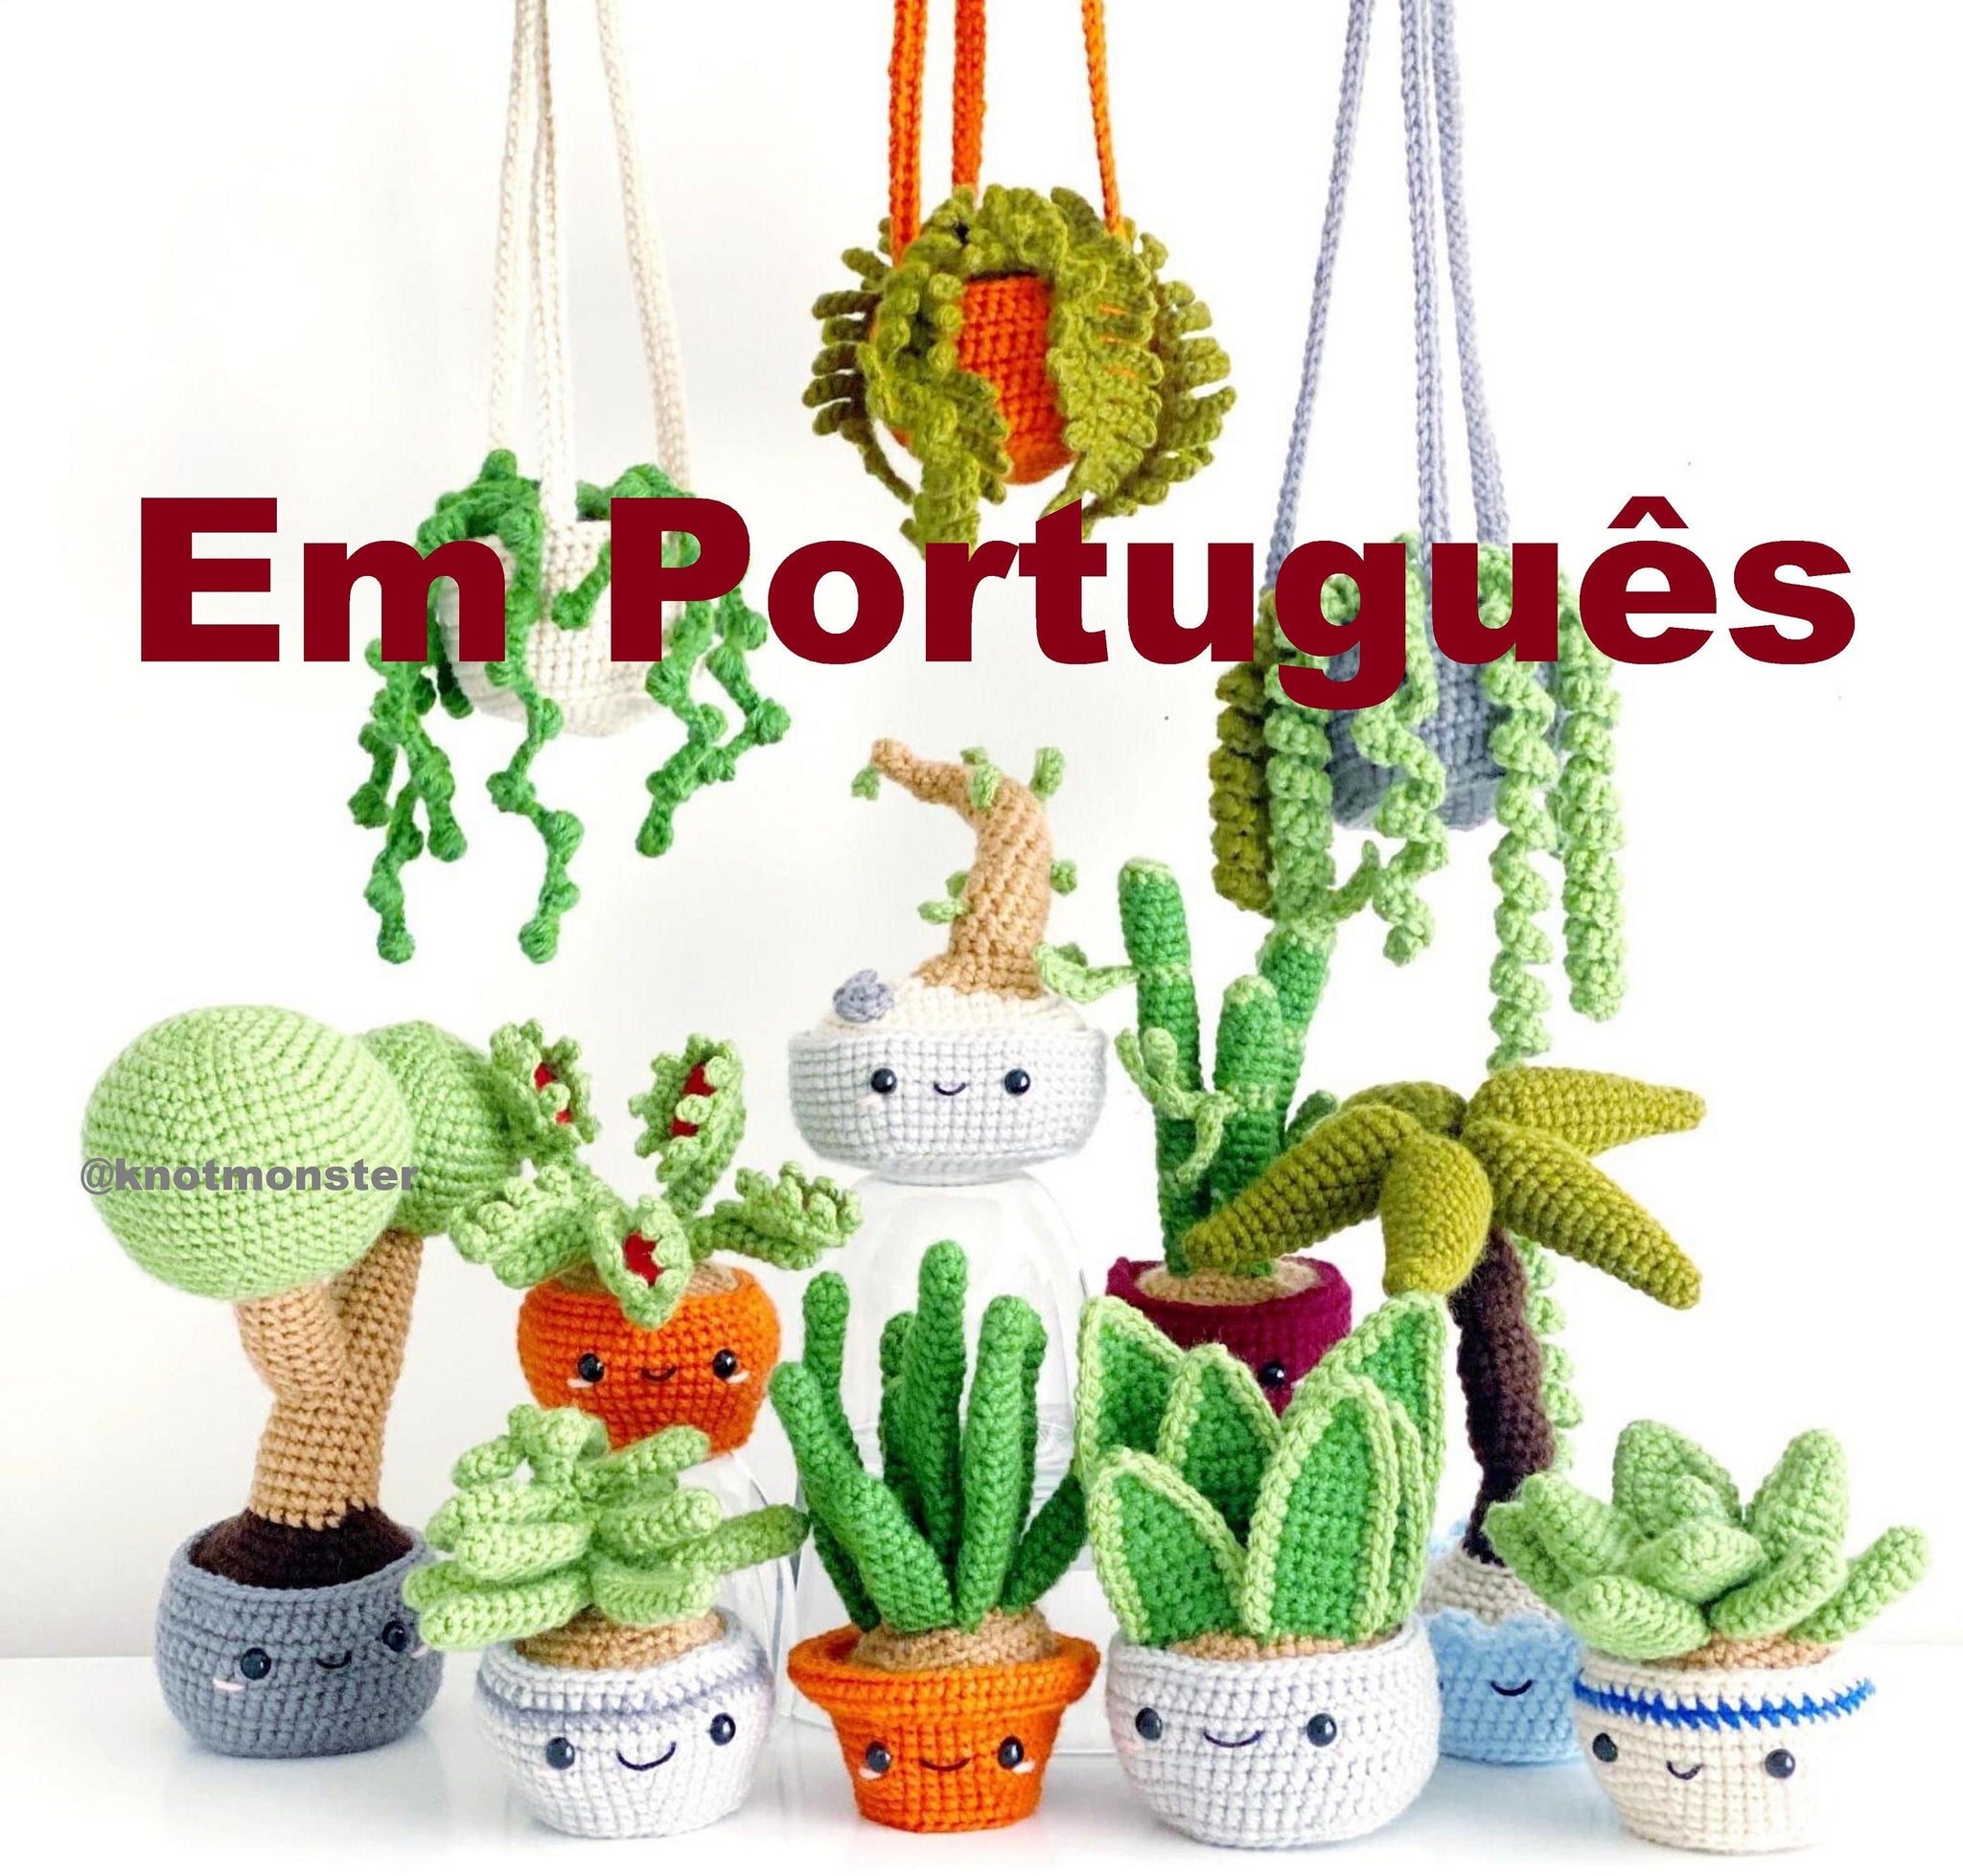 Português 12 Padrões de Plantas em Vasos de Crochê! (DIGITAL/EBOOK)(Em português)